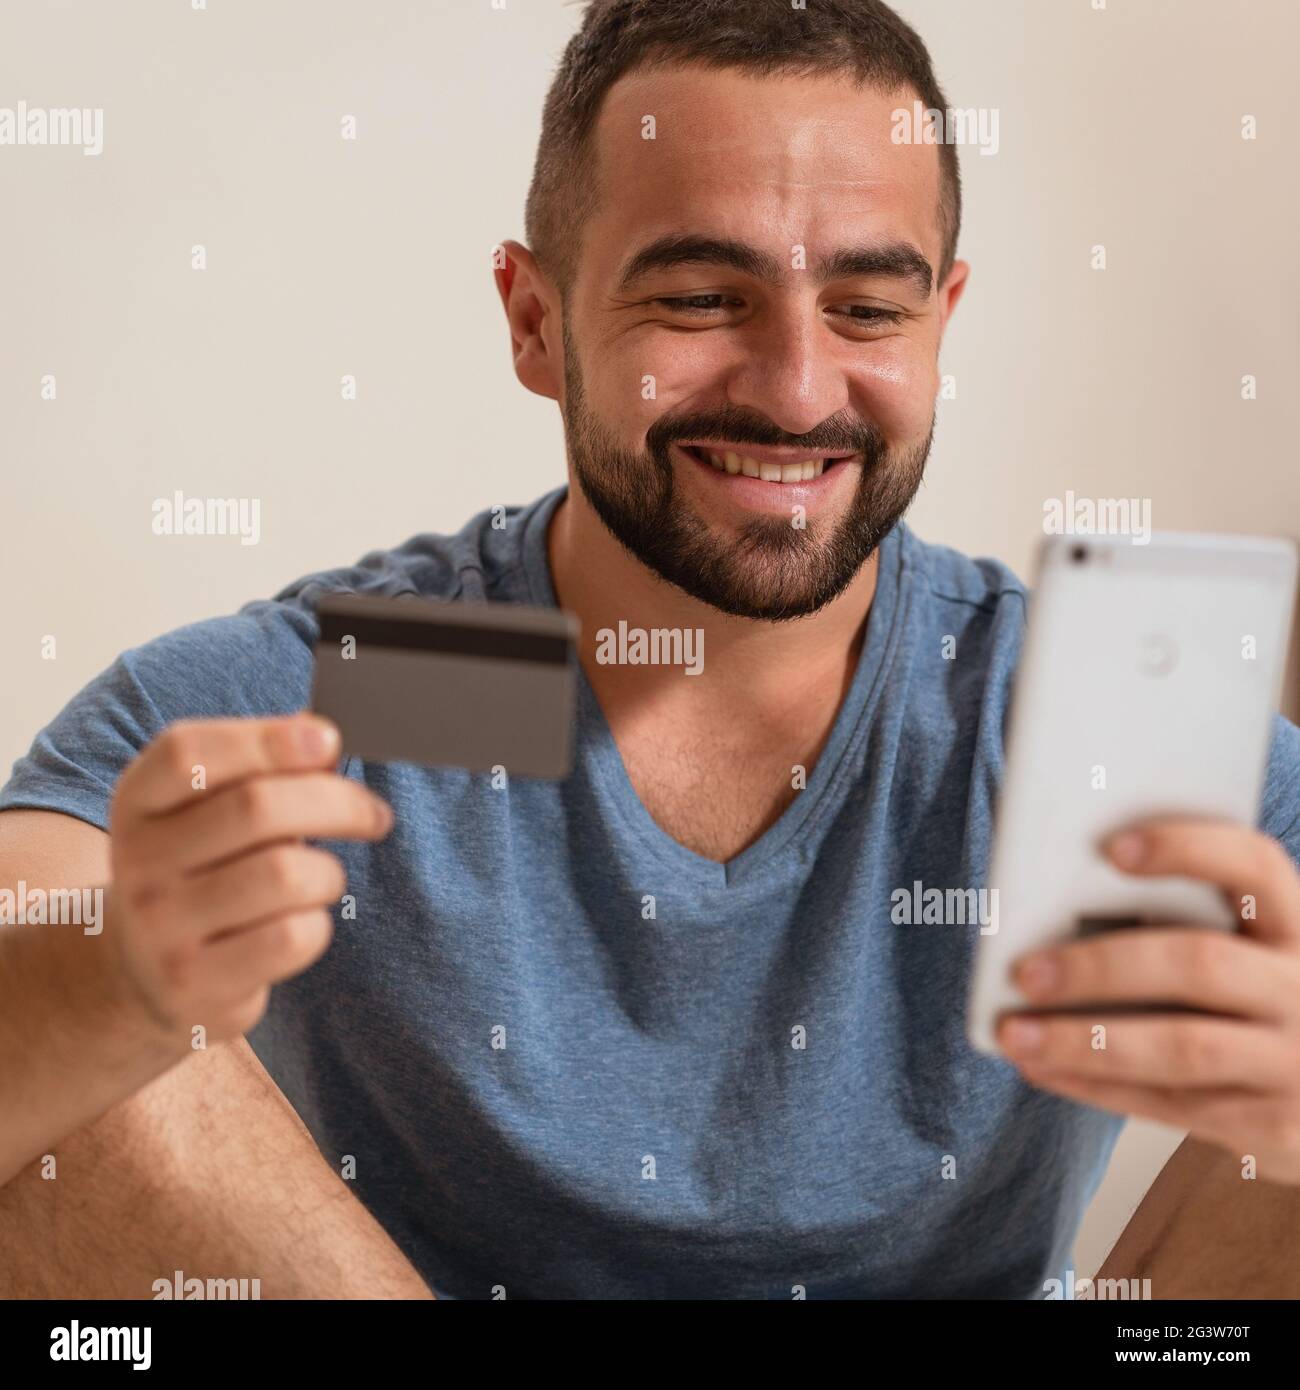 Immagine quadrata di un uomo allegro con smartphone e carta di debito o di credito che acquista attrezzature online o che fa scommesse sportive e gioco d'azzardo Foto Stock